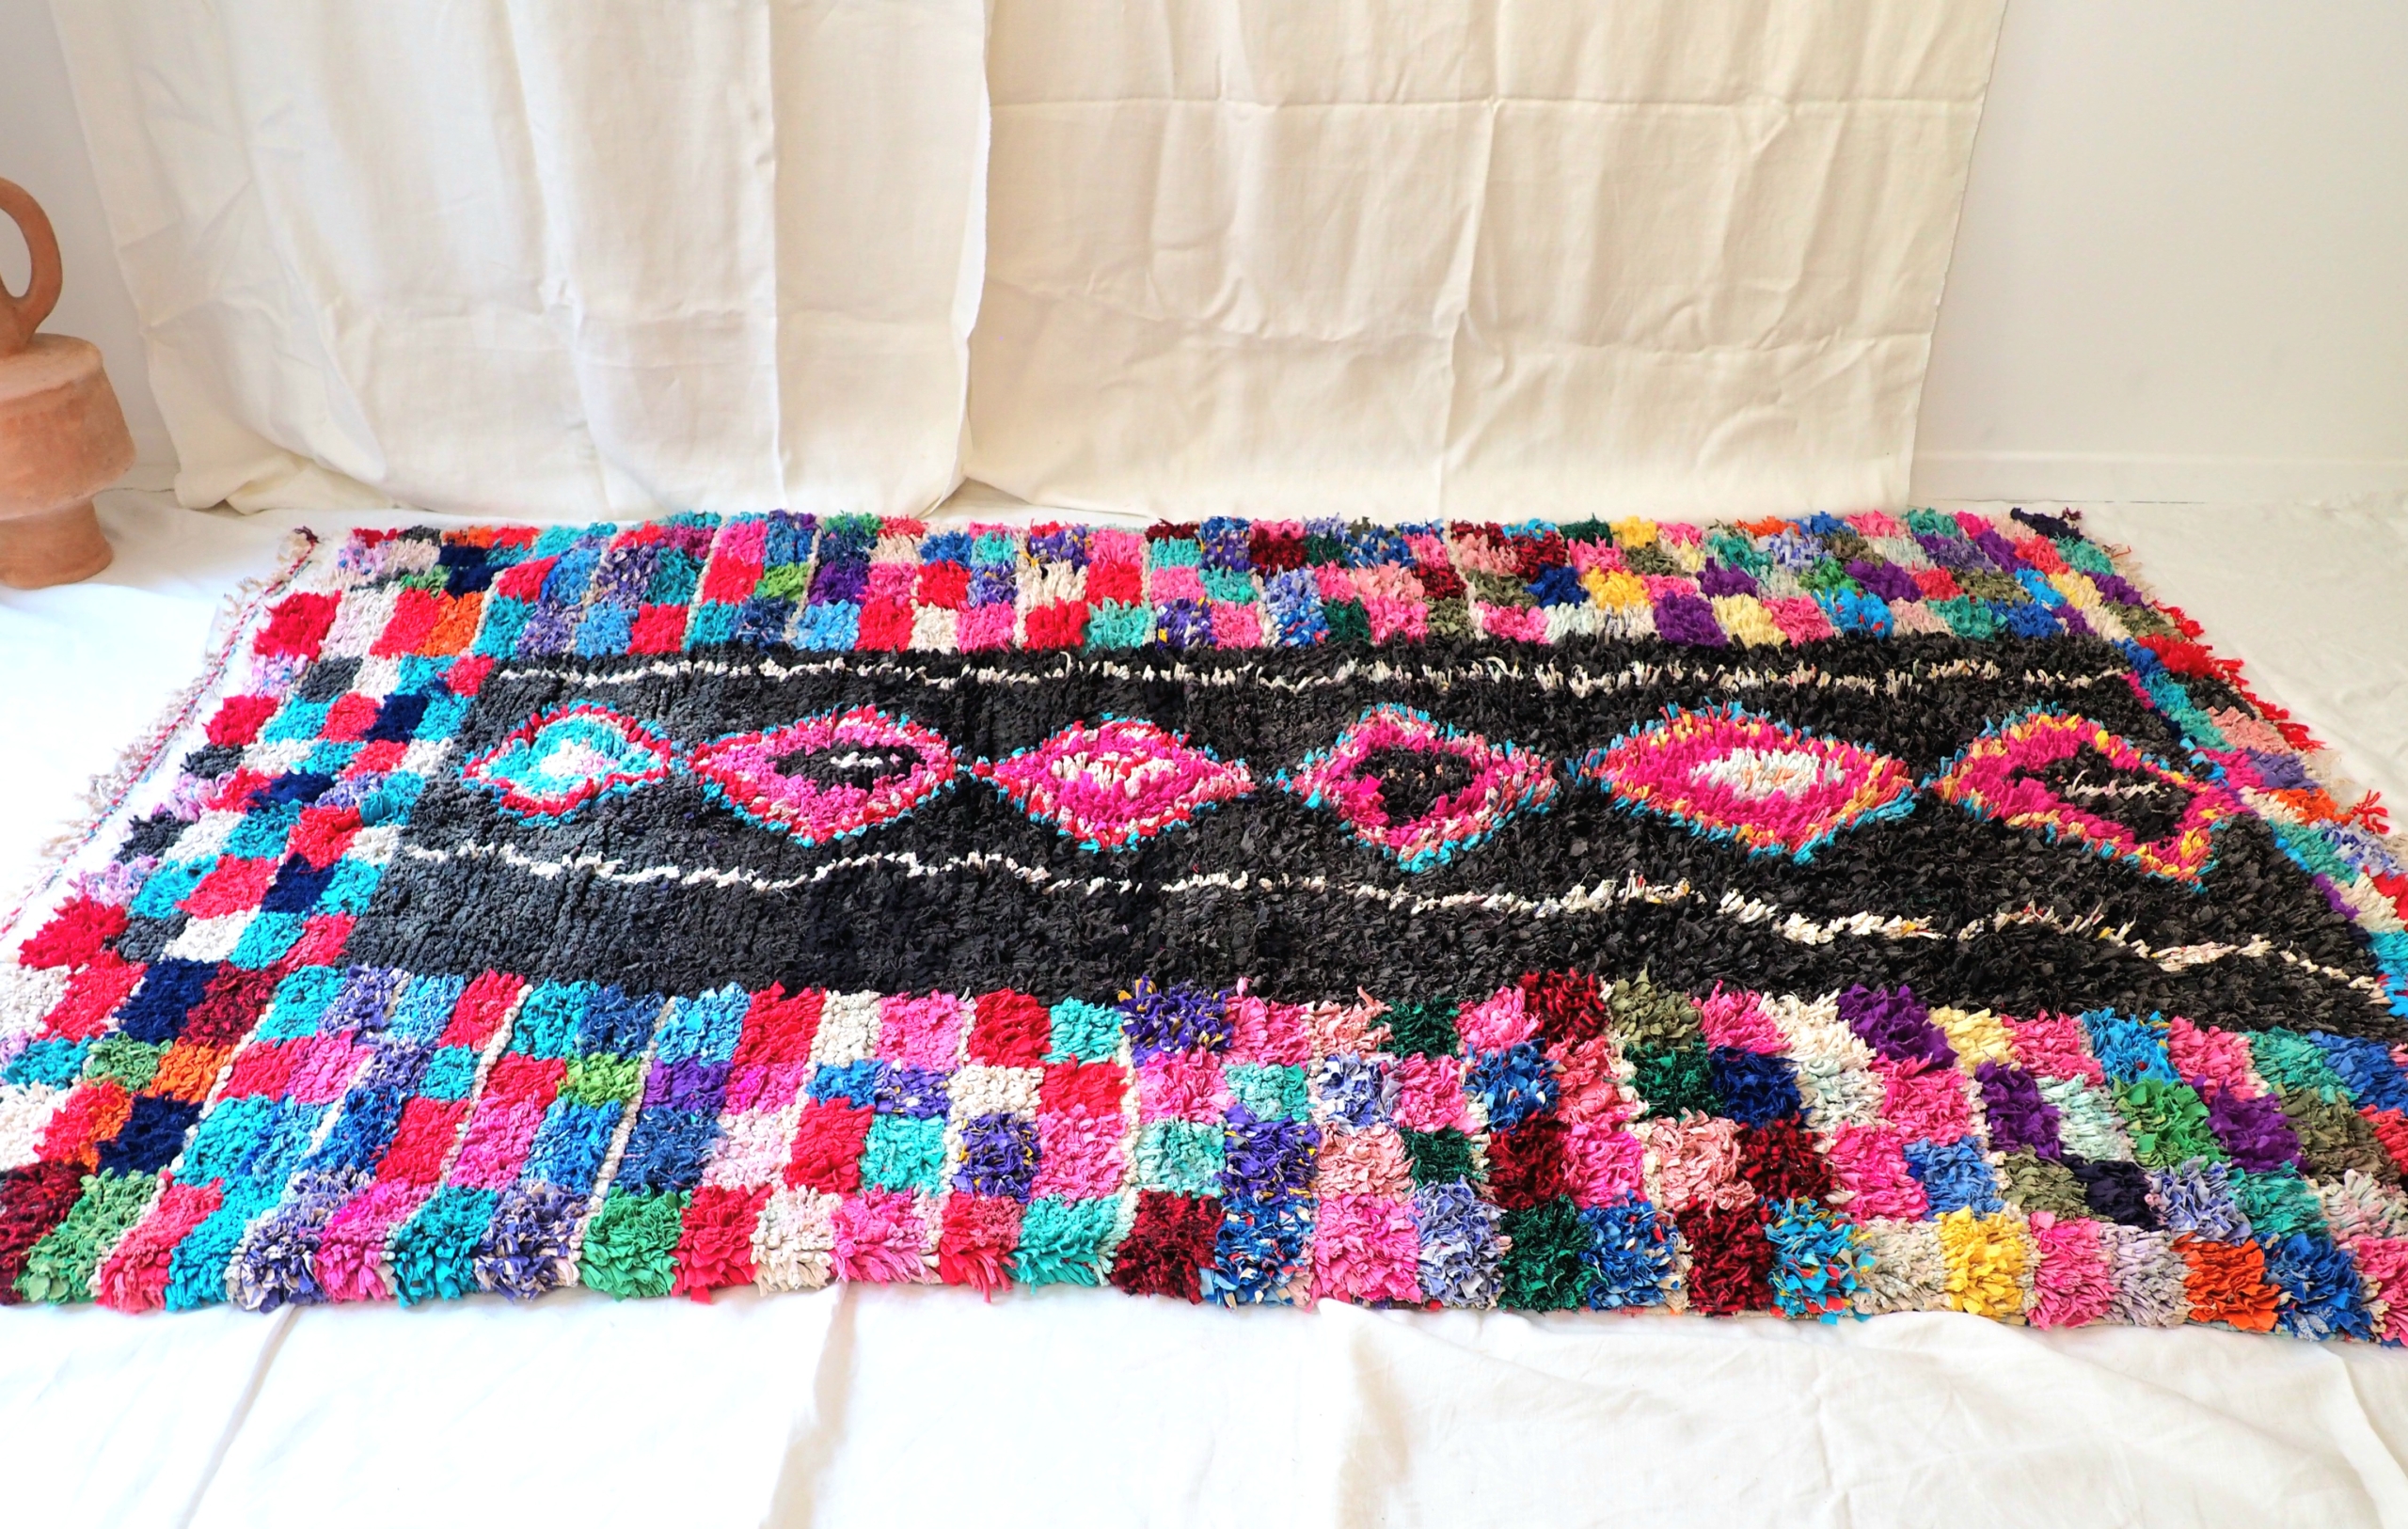 tapis épais coloré fait artisanalement au Maroc de conception ethique et ecologique